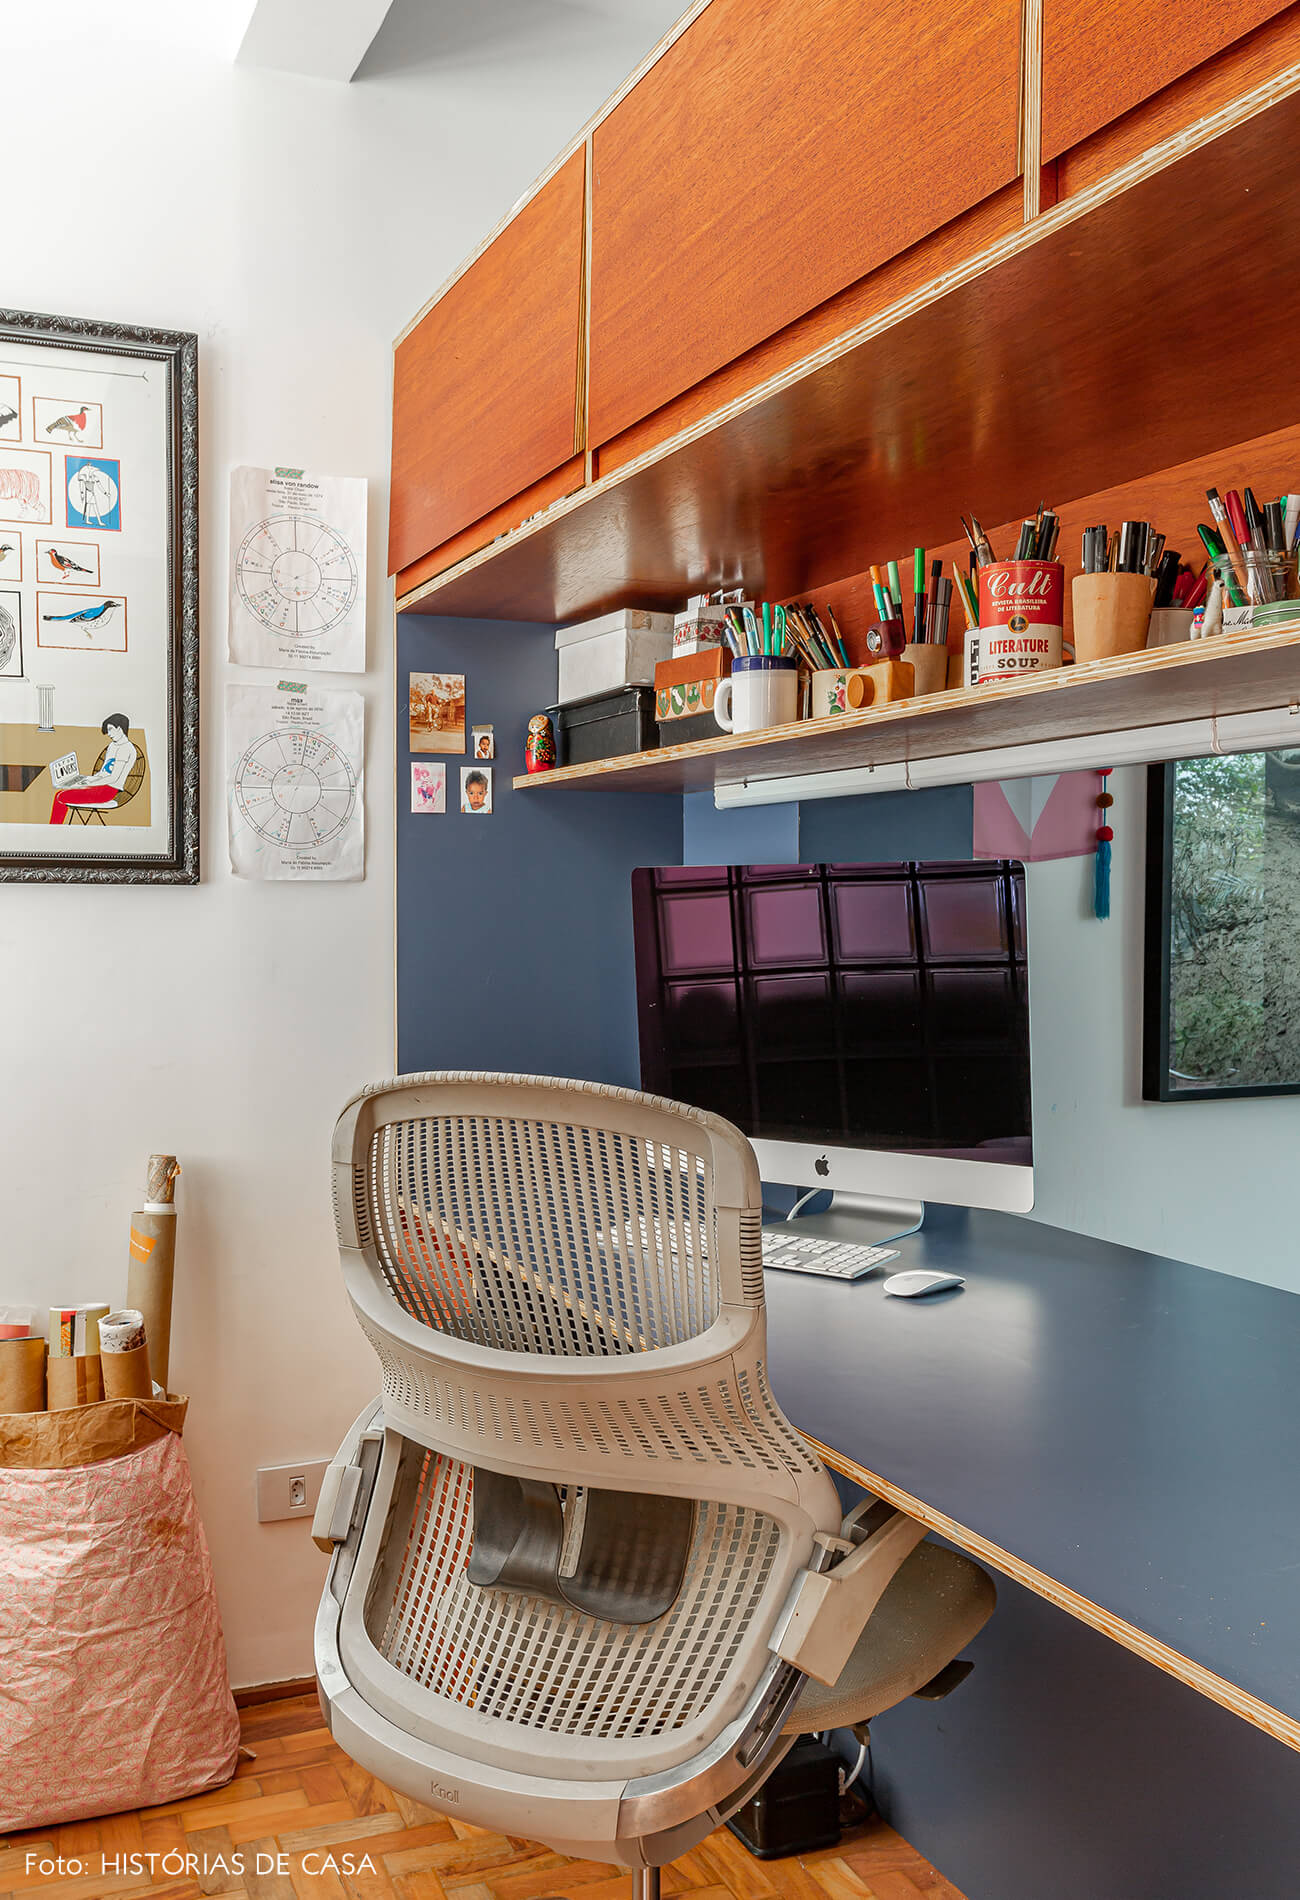 Apartamento com home office integrado, estante dupla face